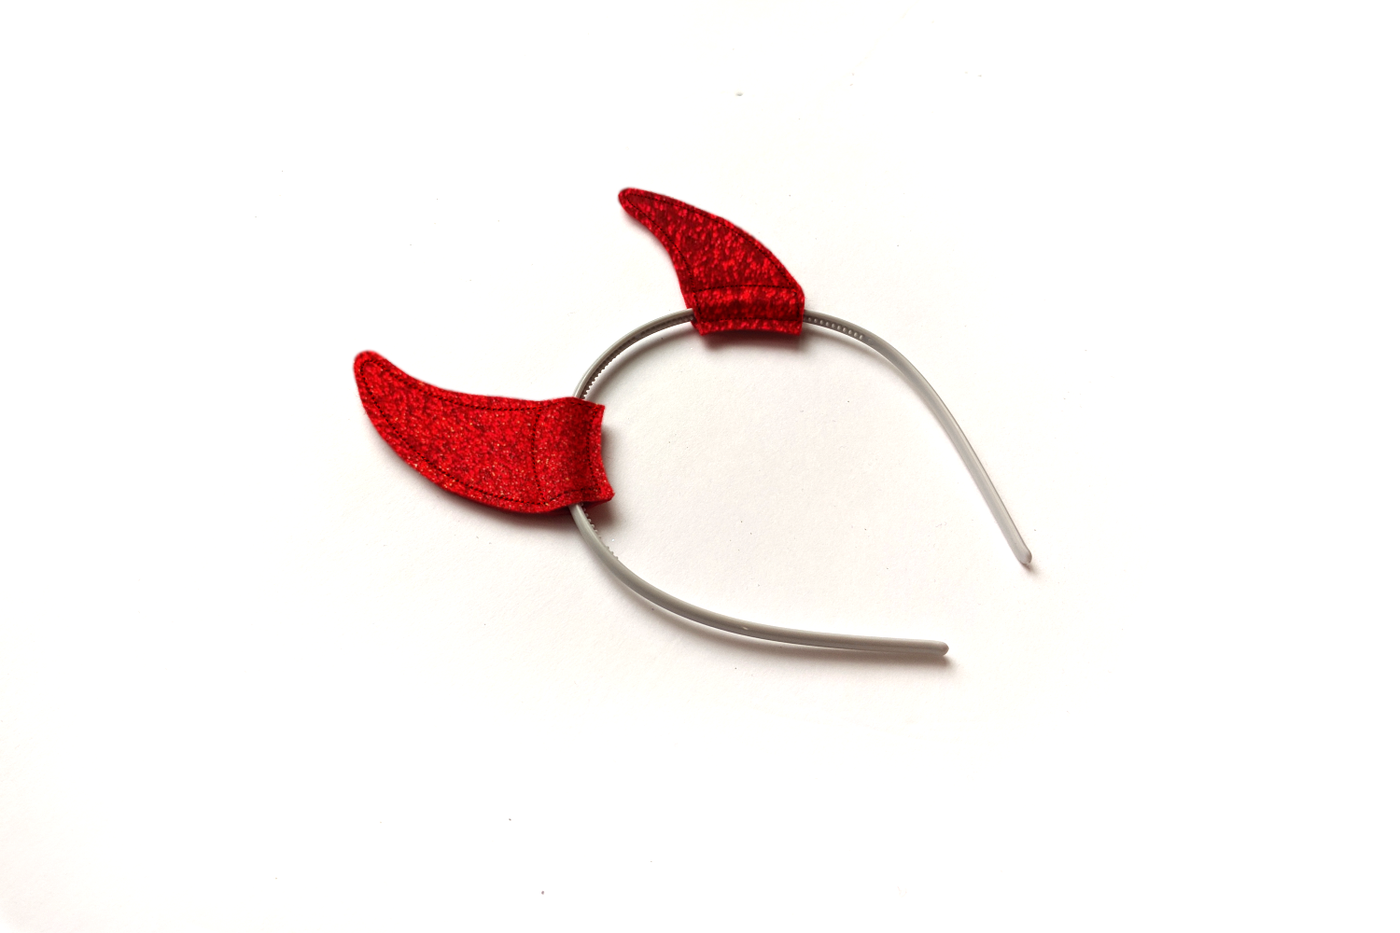 Red glitter devil horn headband on a white background.